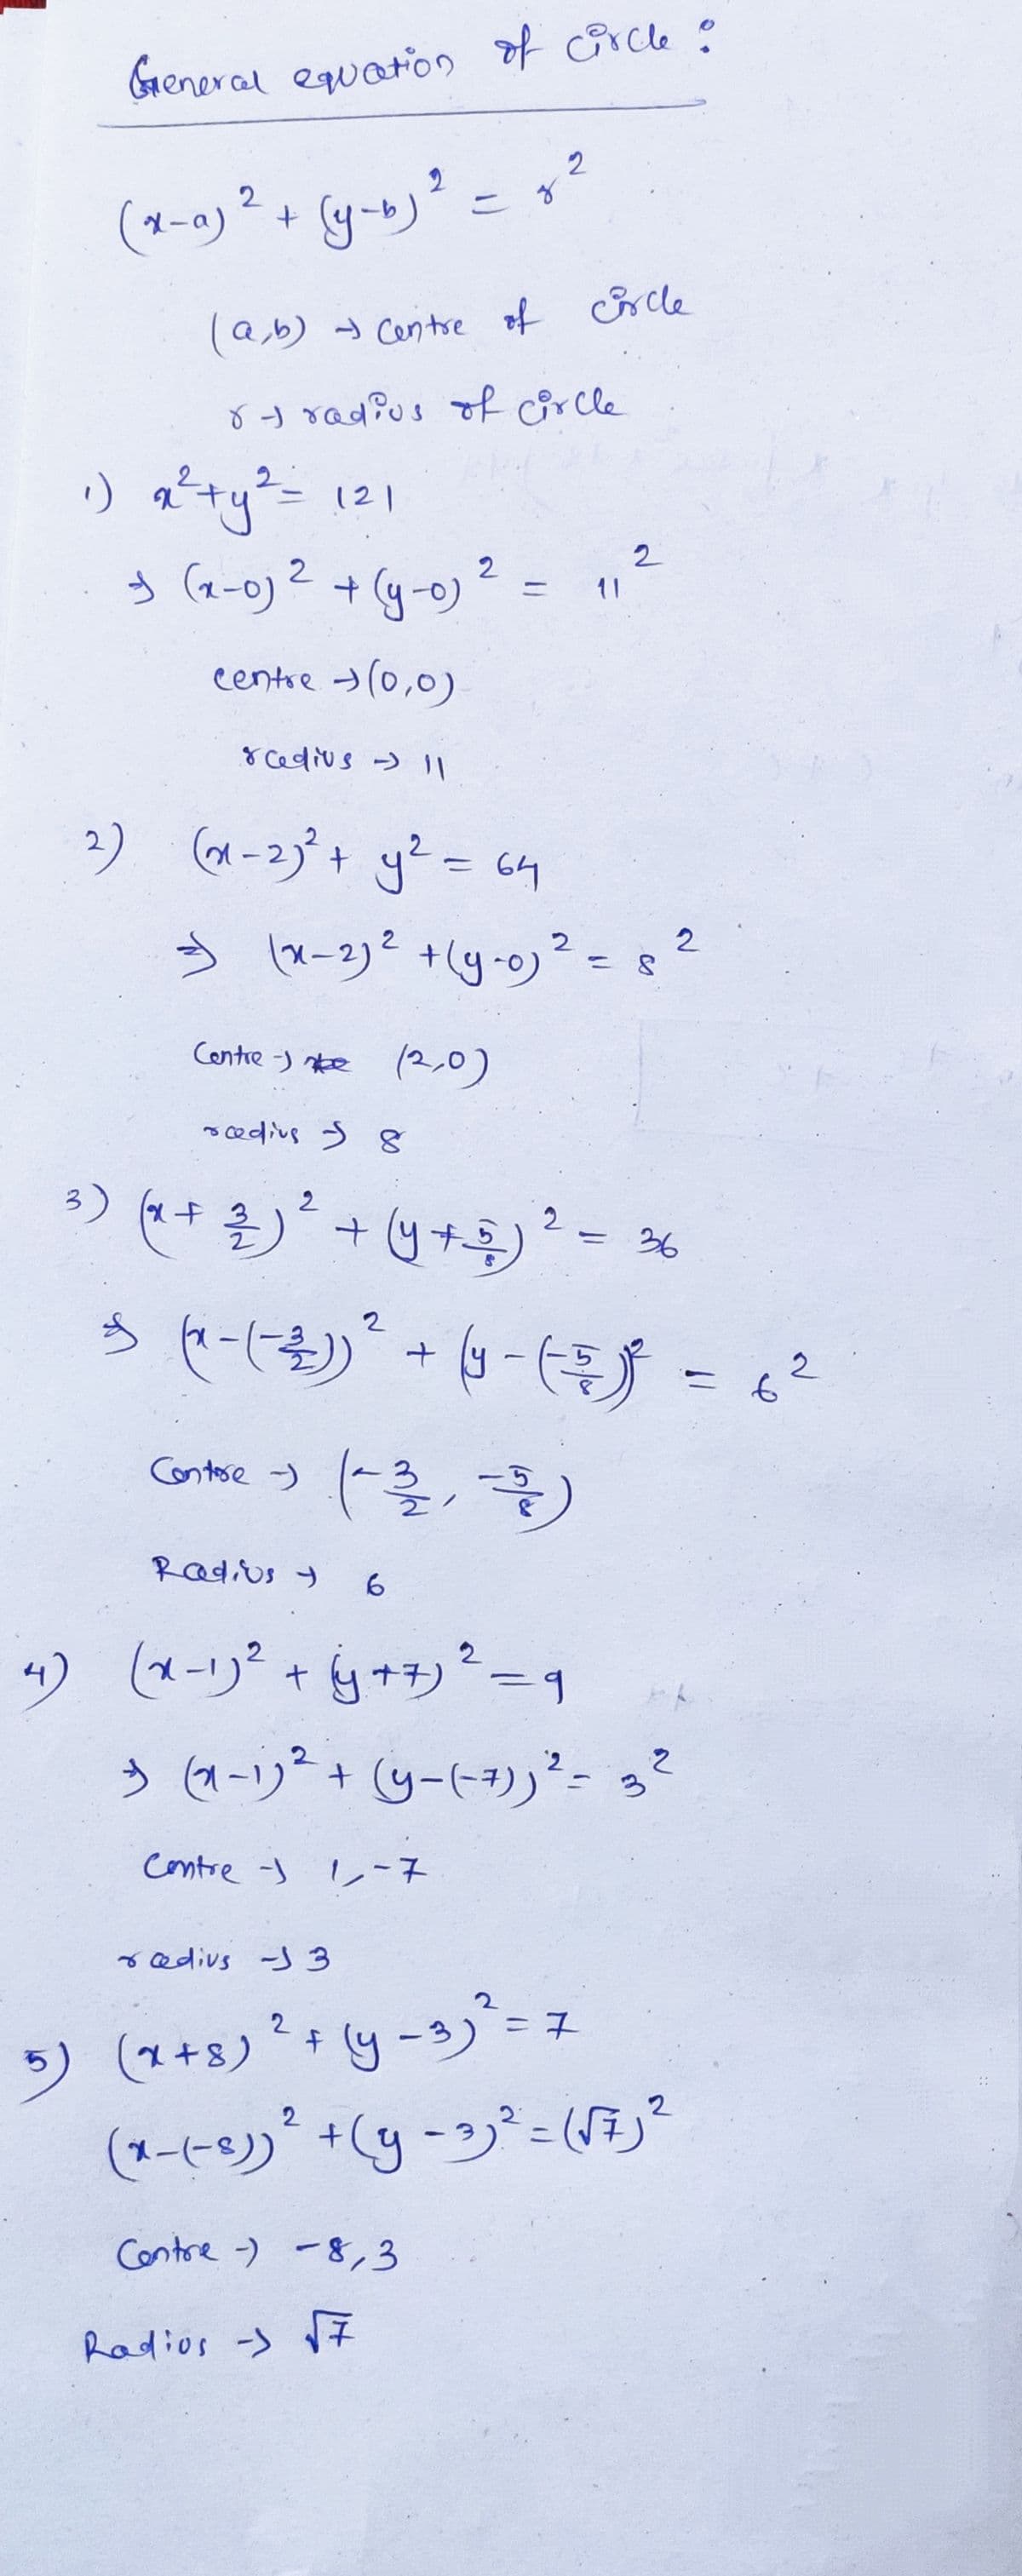 General eqwaton of Grcle :
2
2
こ
(1-a) ? + (y-b) = ?
(ターo)2
(a,b) Centre of rcle
8 J radius of circle
り心ー
う(a-o)2+ (g-)? =
121
2.
11
centre >(0,0)
8 cedius > I1
2) (x-2)°+ y? = 64
%3D
う ロー2)? +(g-9)。
2
Centre -) ke (2,0)
*edvs う g
)+ま)+四)~- %
2
36
うセーにも)+カー -
2
Contese -)
Radius y
6.
りーリャ白ナ。11
う(aーリ+ (y-ト)ーっ
2
+yナジー1
%3,
Contre s ーネ
o edivs -)3
2
り(+5)?+y-)ース
* y -3)"=
5) (1+s)
(ーヒ)+(y-ジニ(月)。
Contre -) -8,3
Radios -) 7
